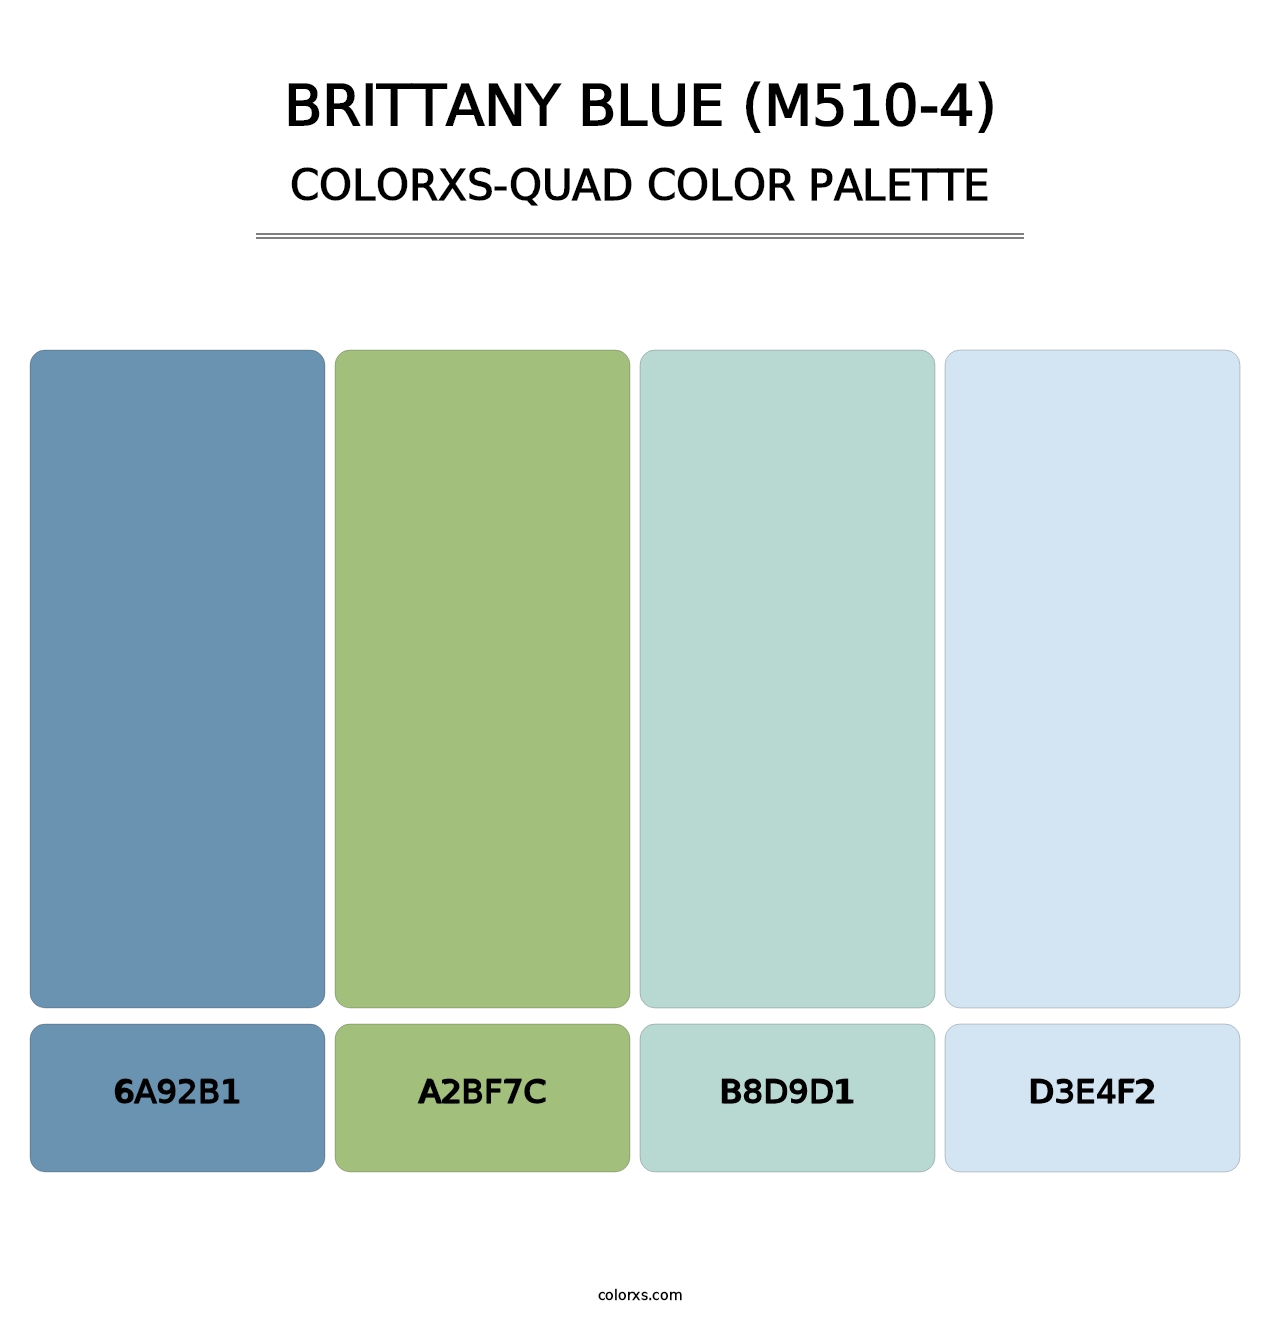 Brittany Blue (M510-4) - Colorxs Quad Palette